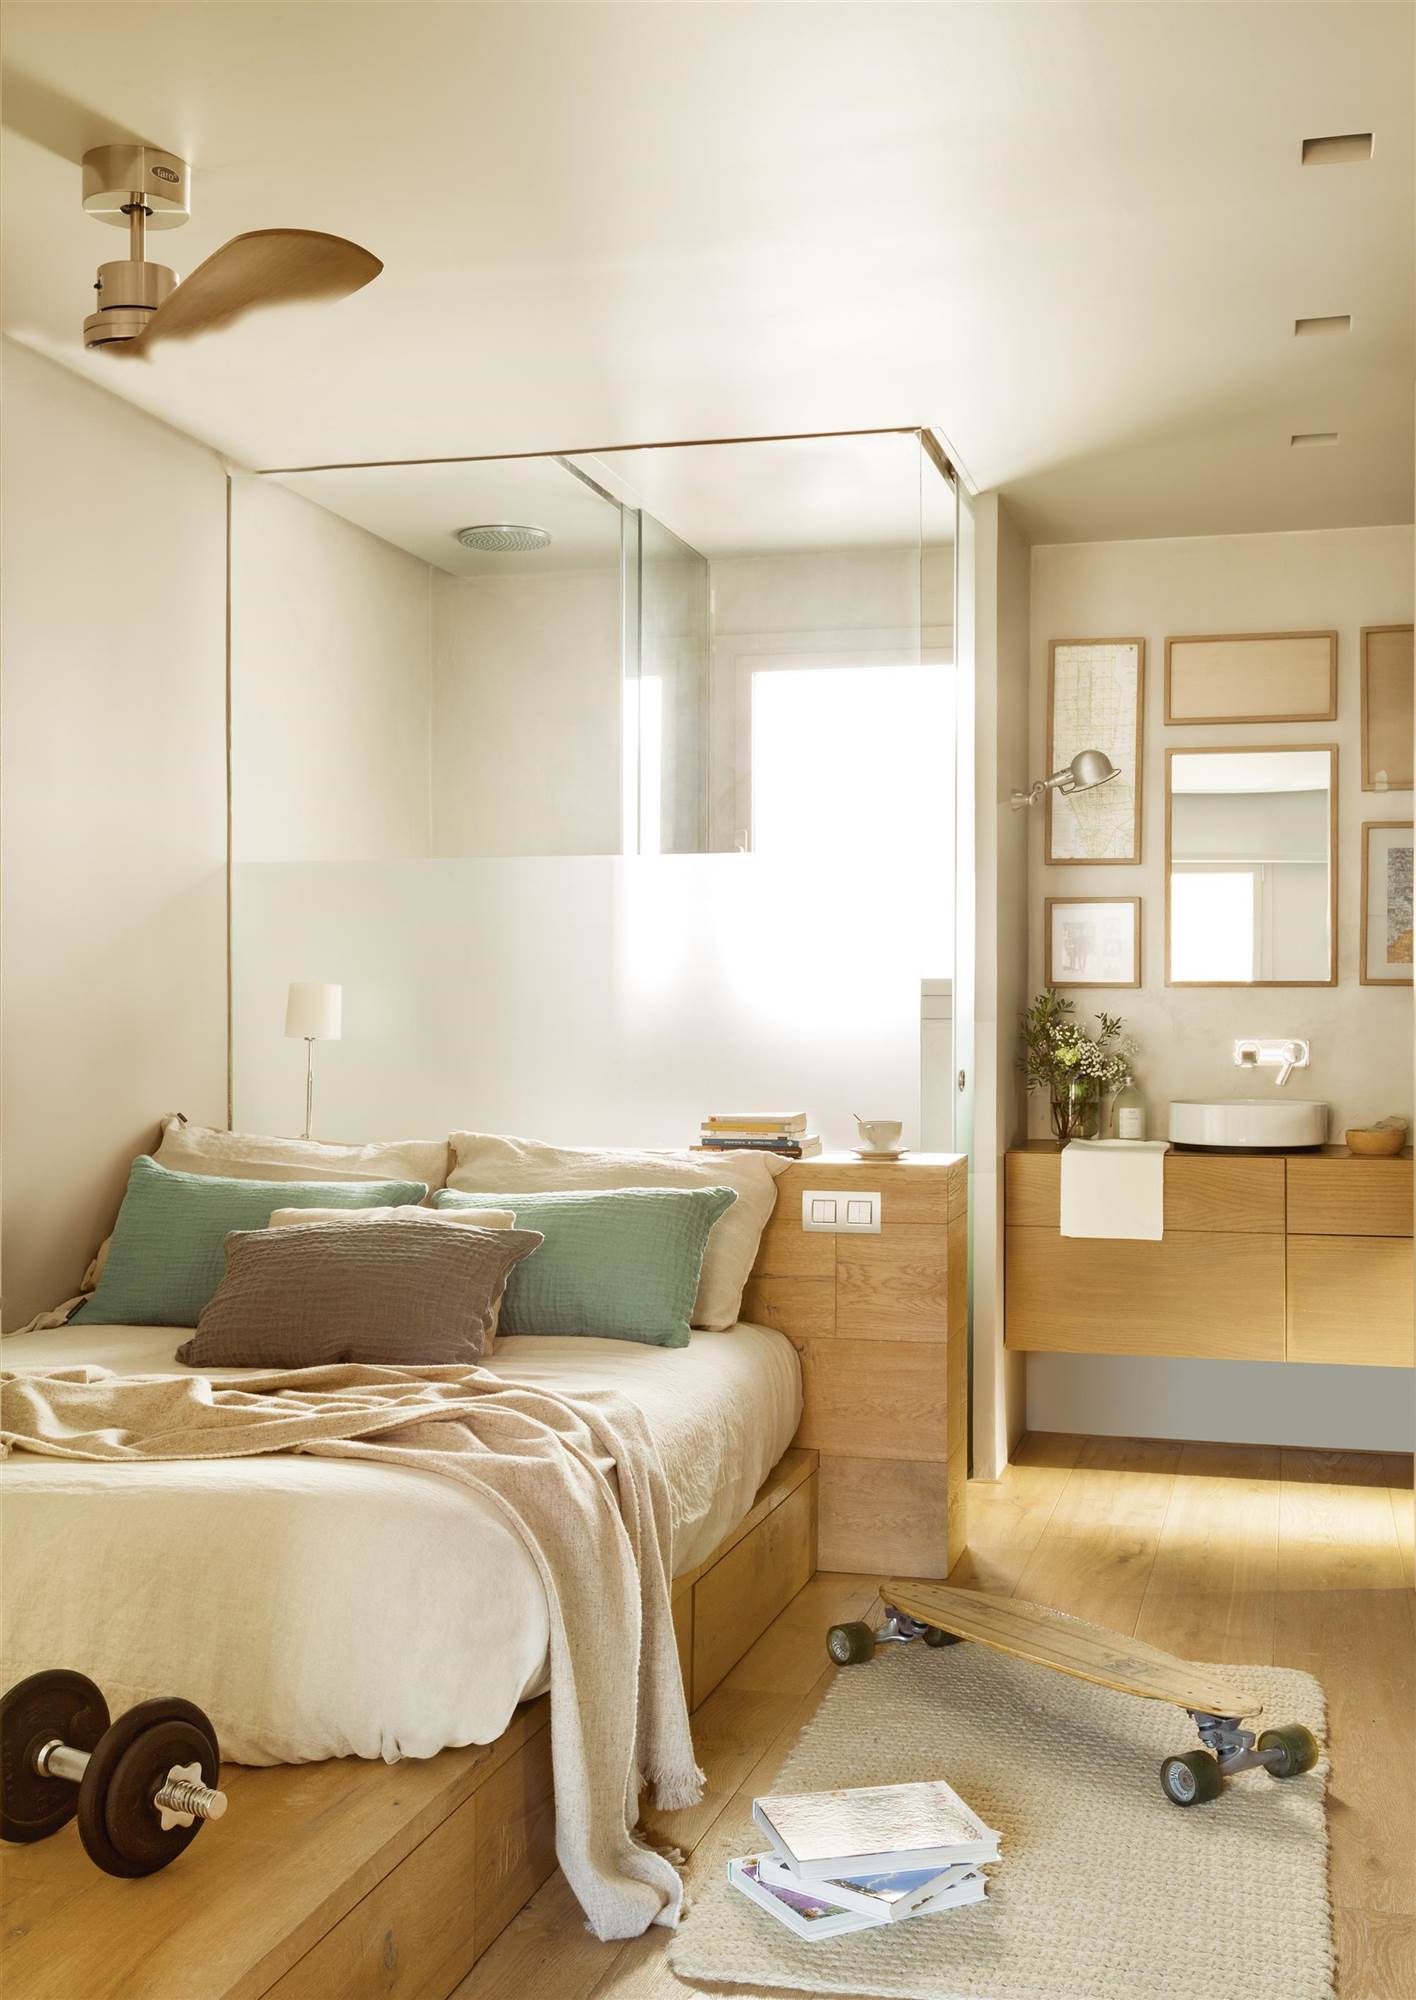 Dormitorio juvenil con cama tipo tatami y baño